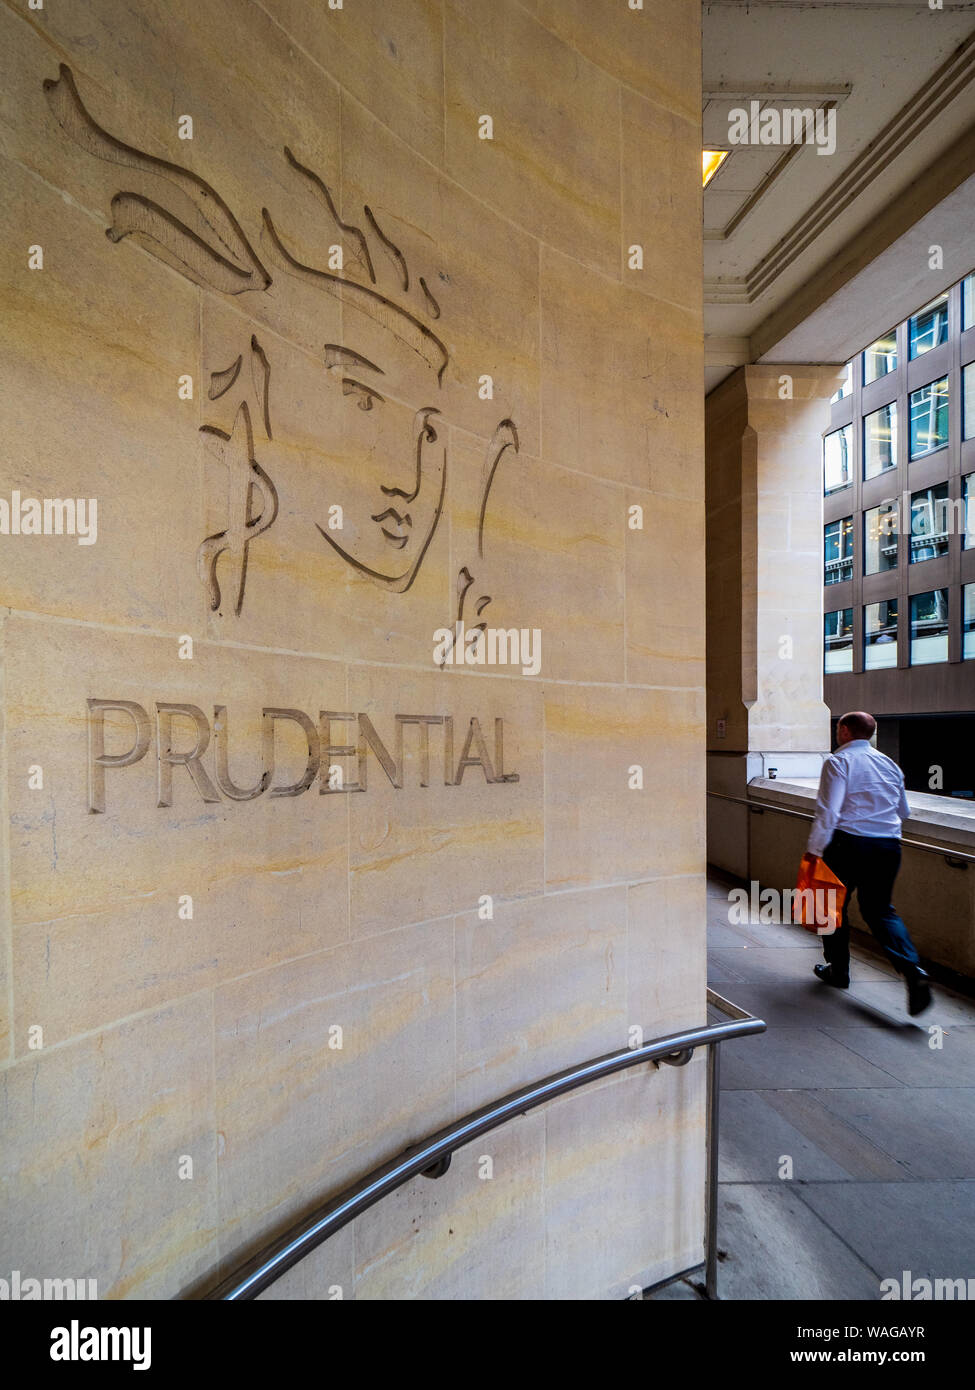 Prudential London Logo - Logo der Prudential Life Insurance and Financial Services Company, das in die Wand eines Gebäudes in Central London UK eingemeißelt wurde Stockfoto